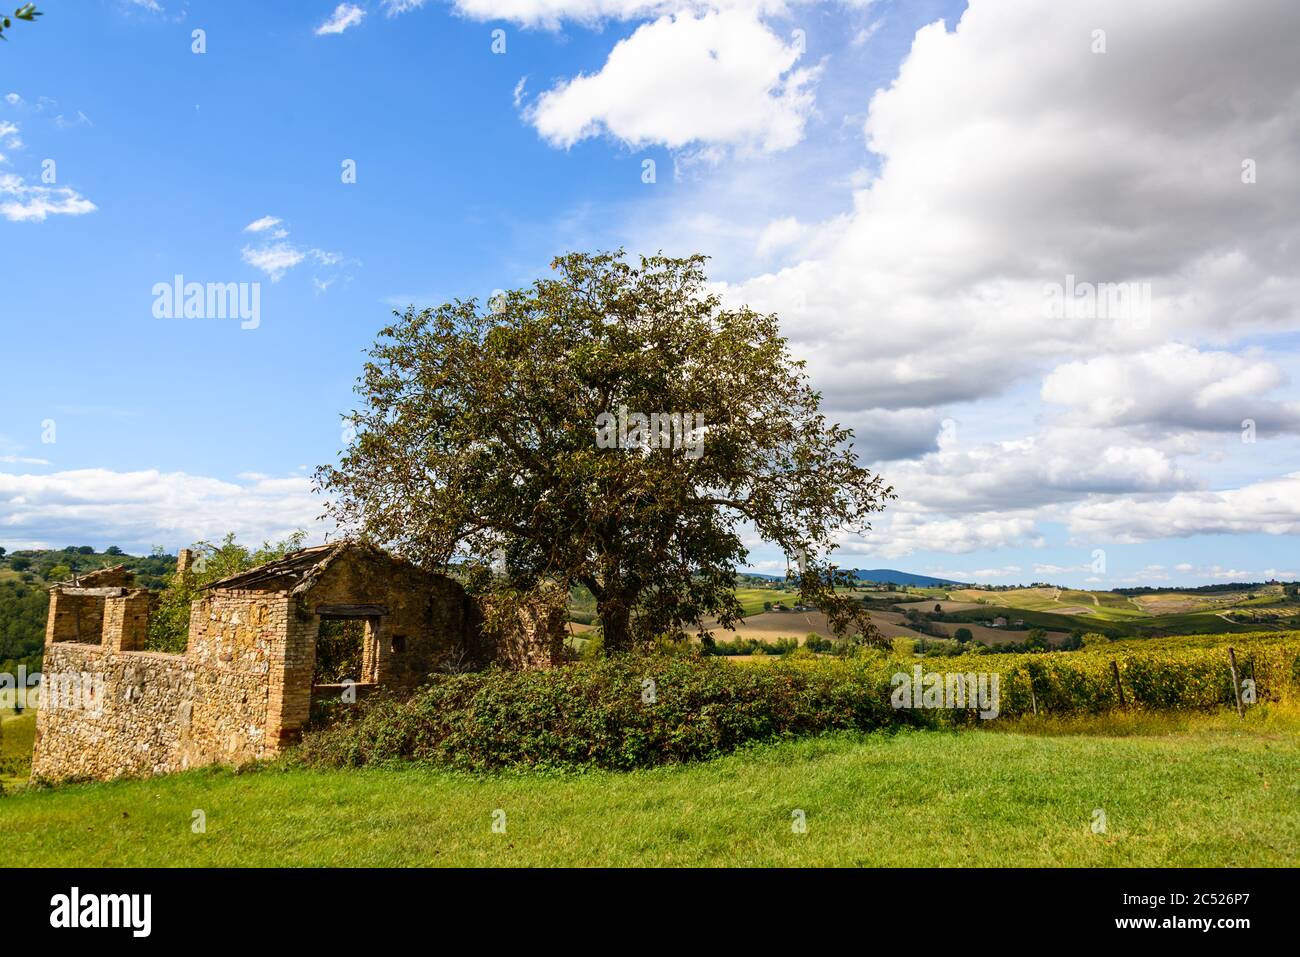 Olivenbaum und Rustico auf einem Weingut im Chiantigebiet Stock Photo